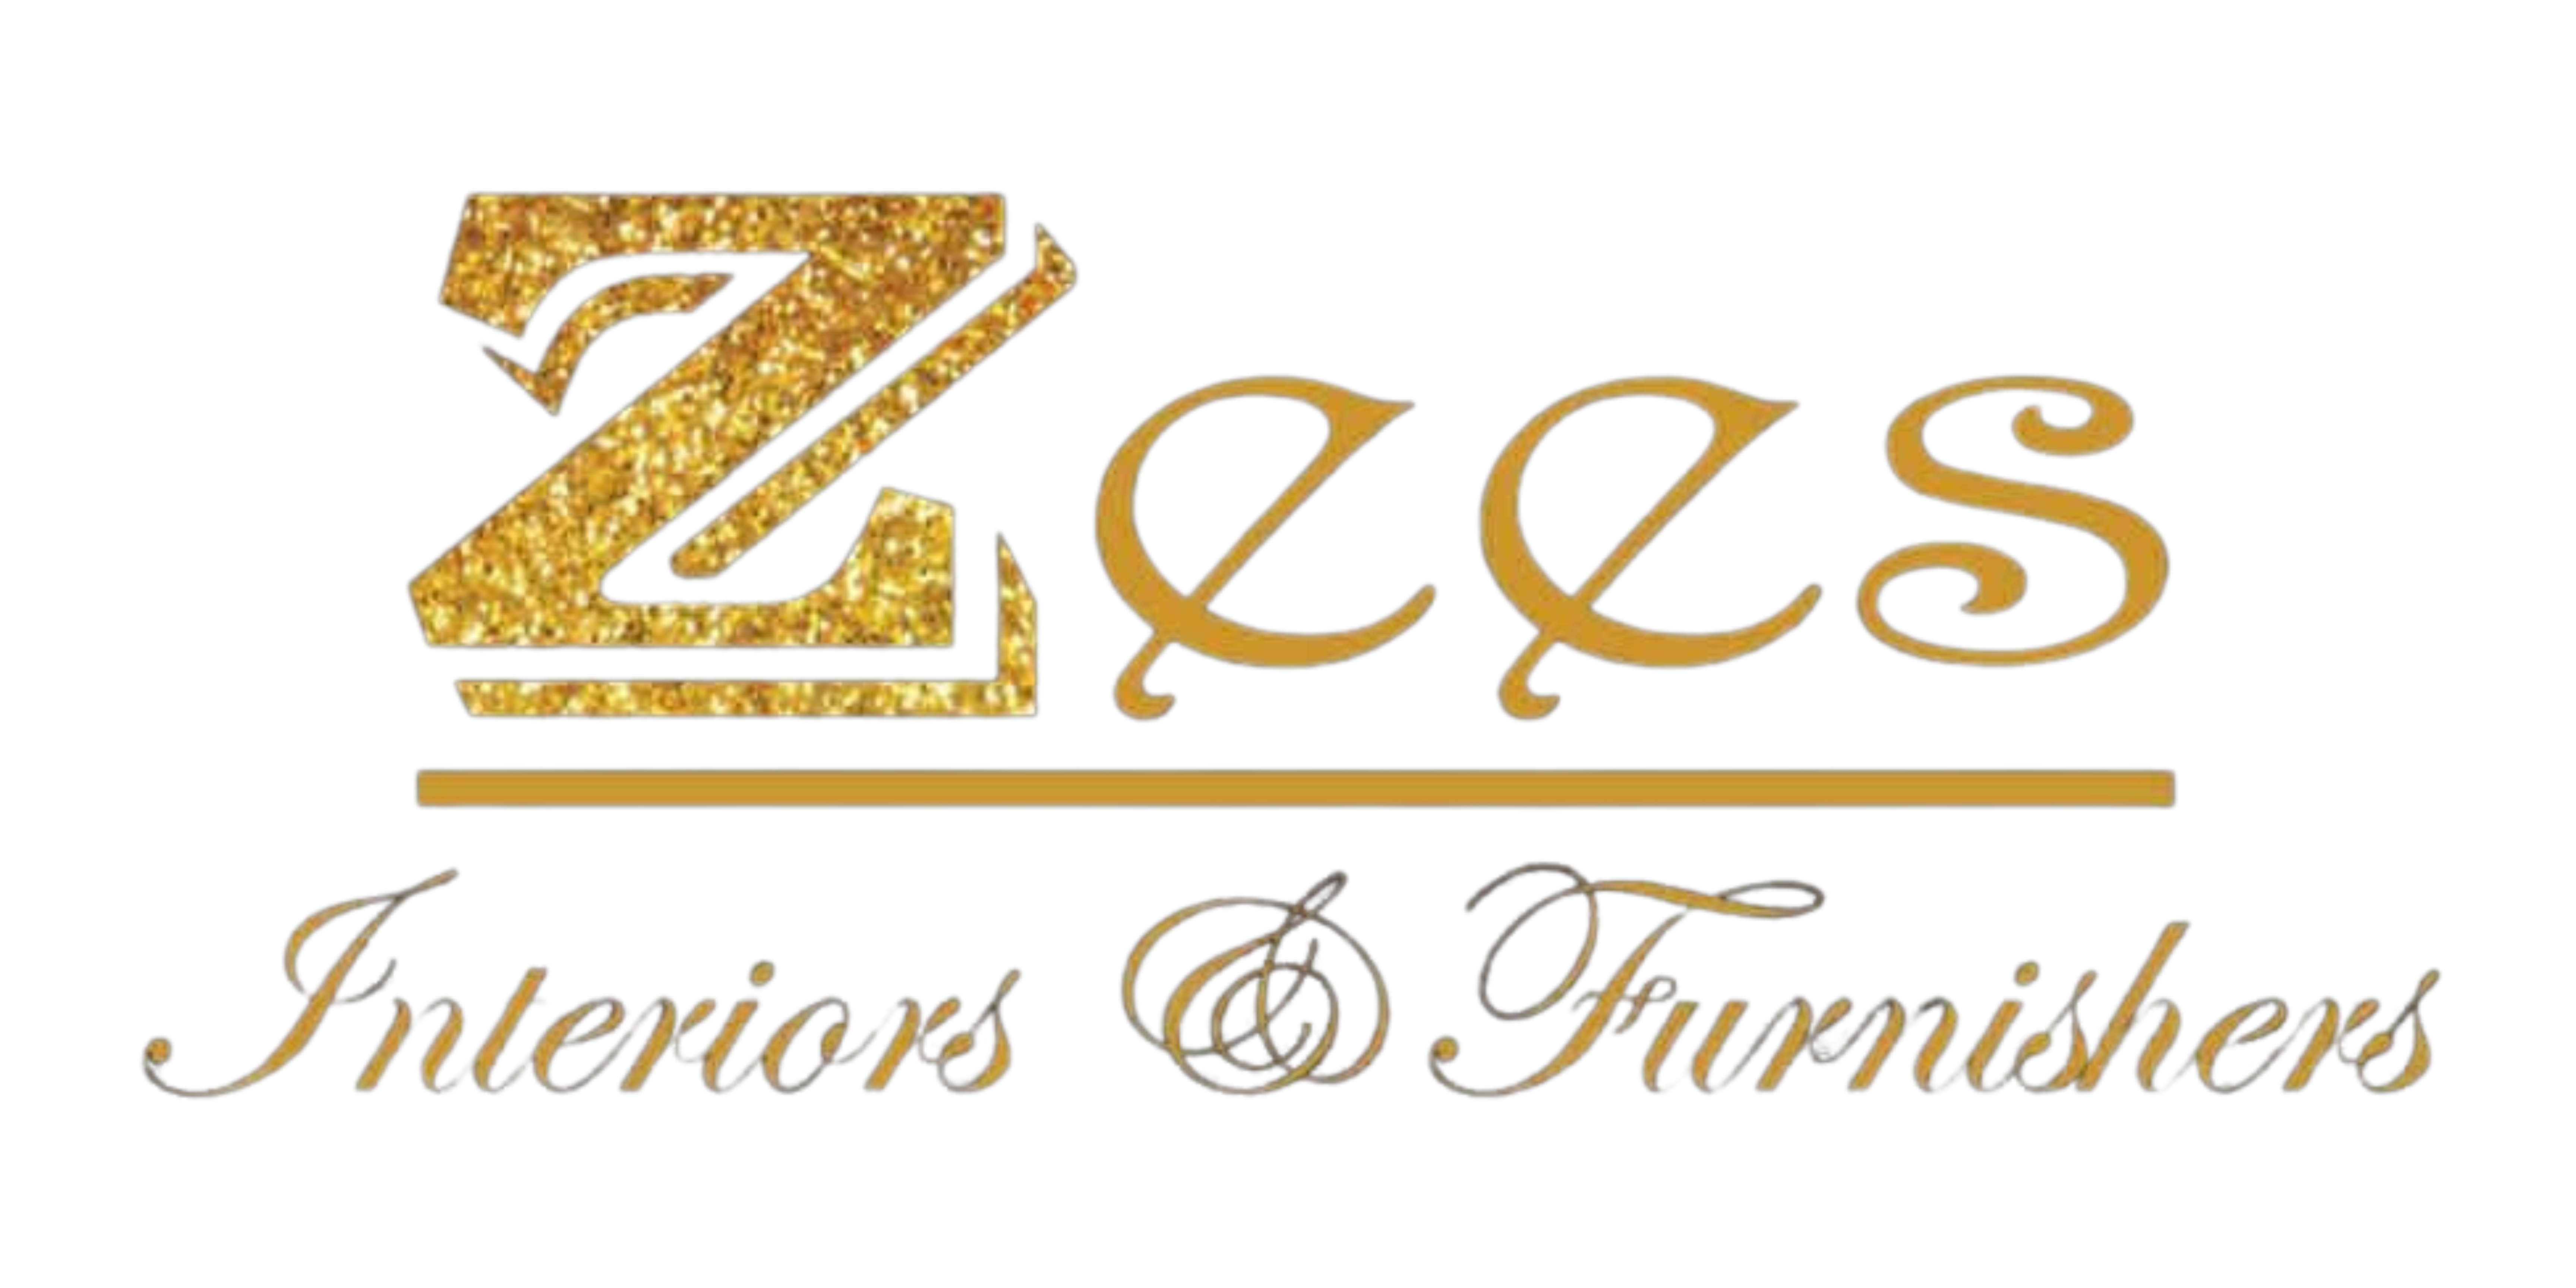 zees logo